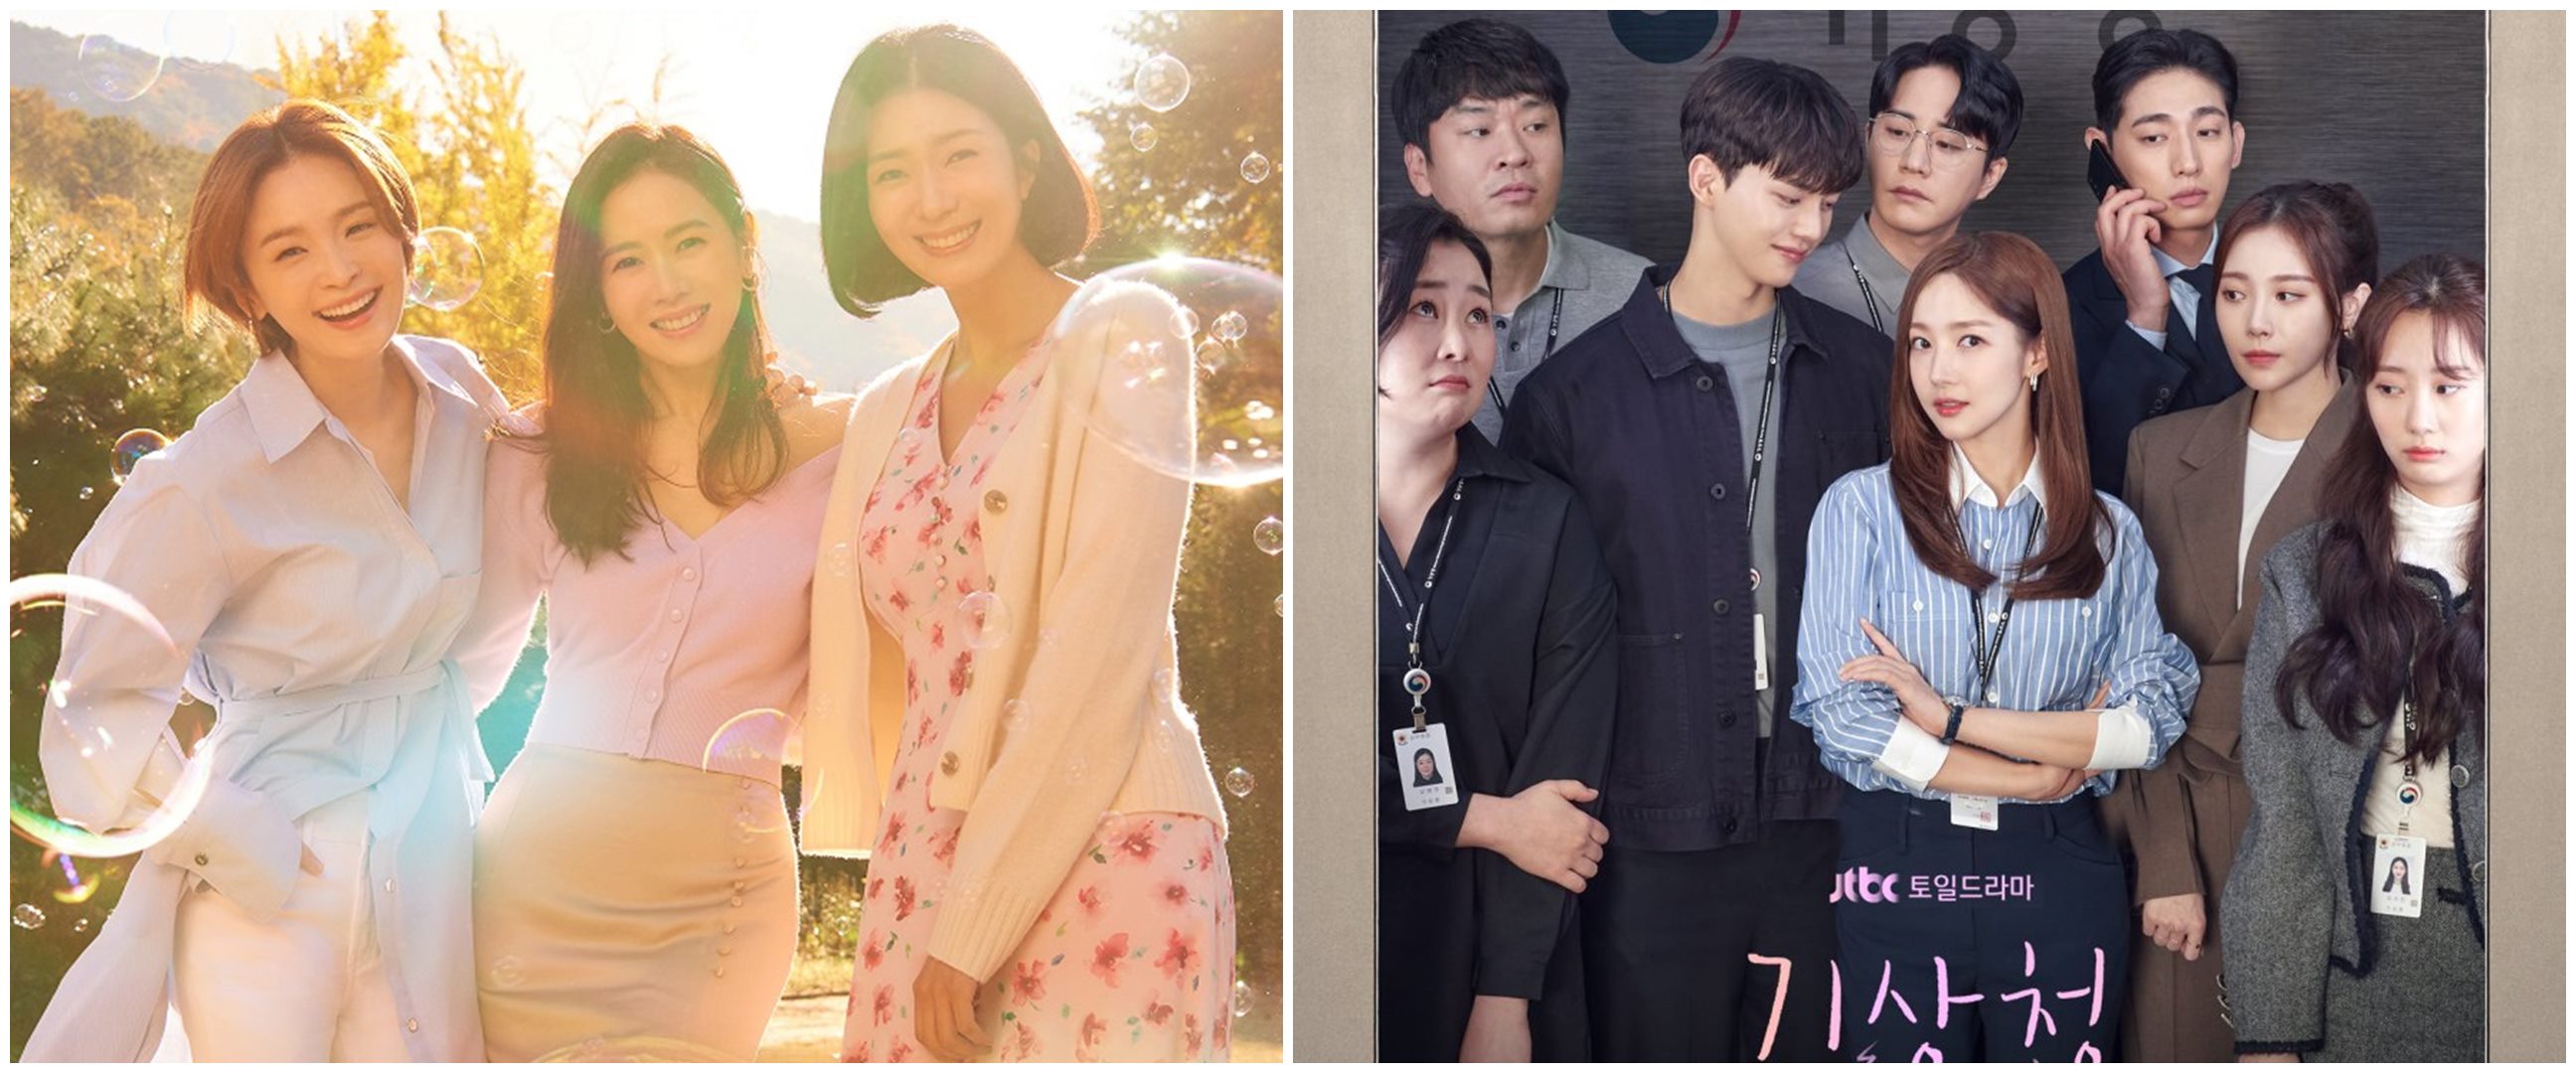 9 Drama Korea terpopuler Februari minggu keempat, Ghost Doctor tamat